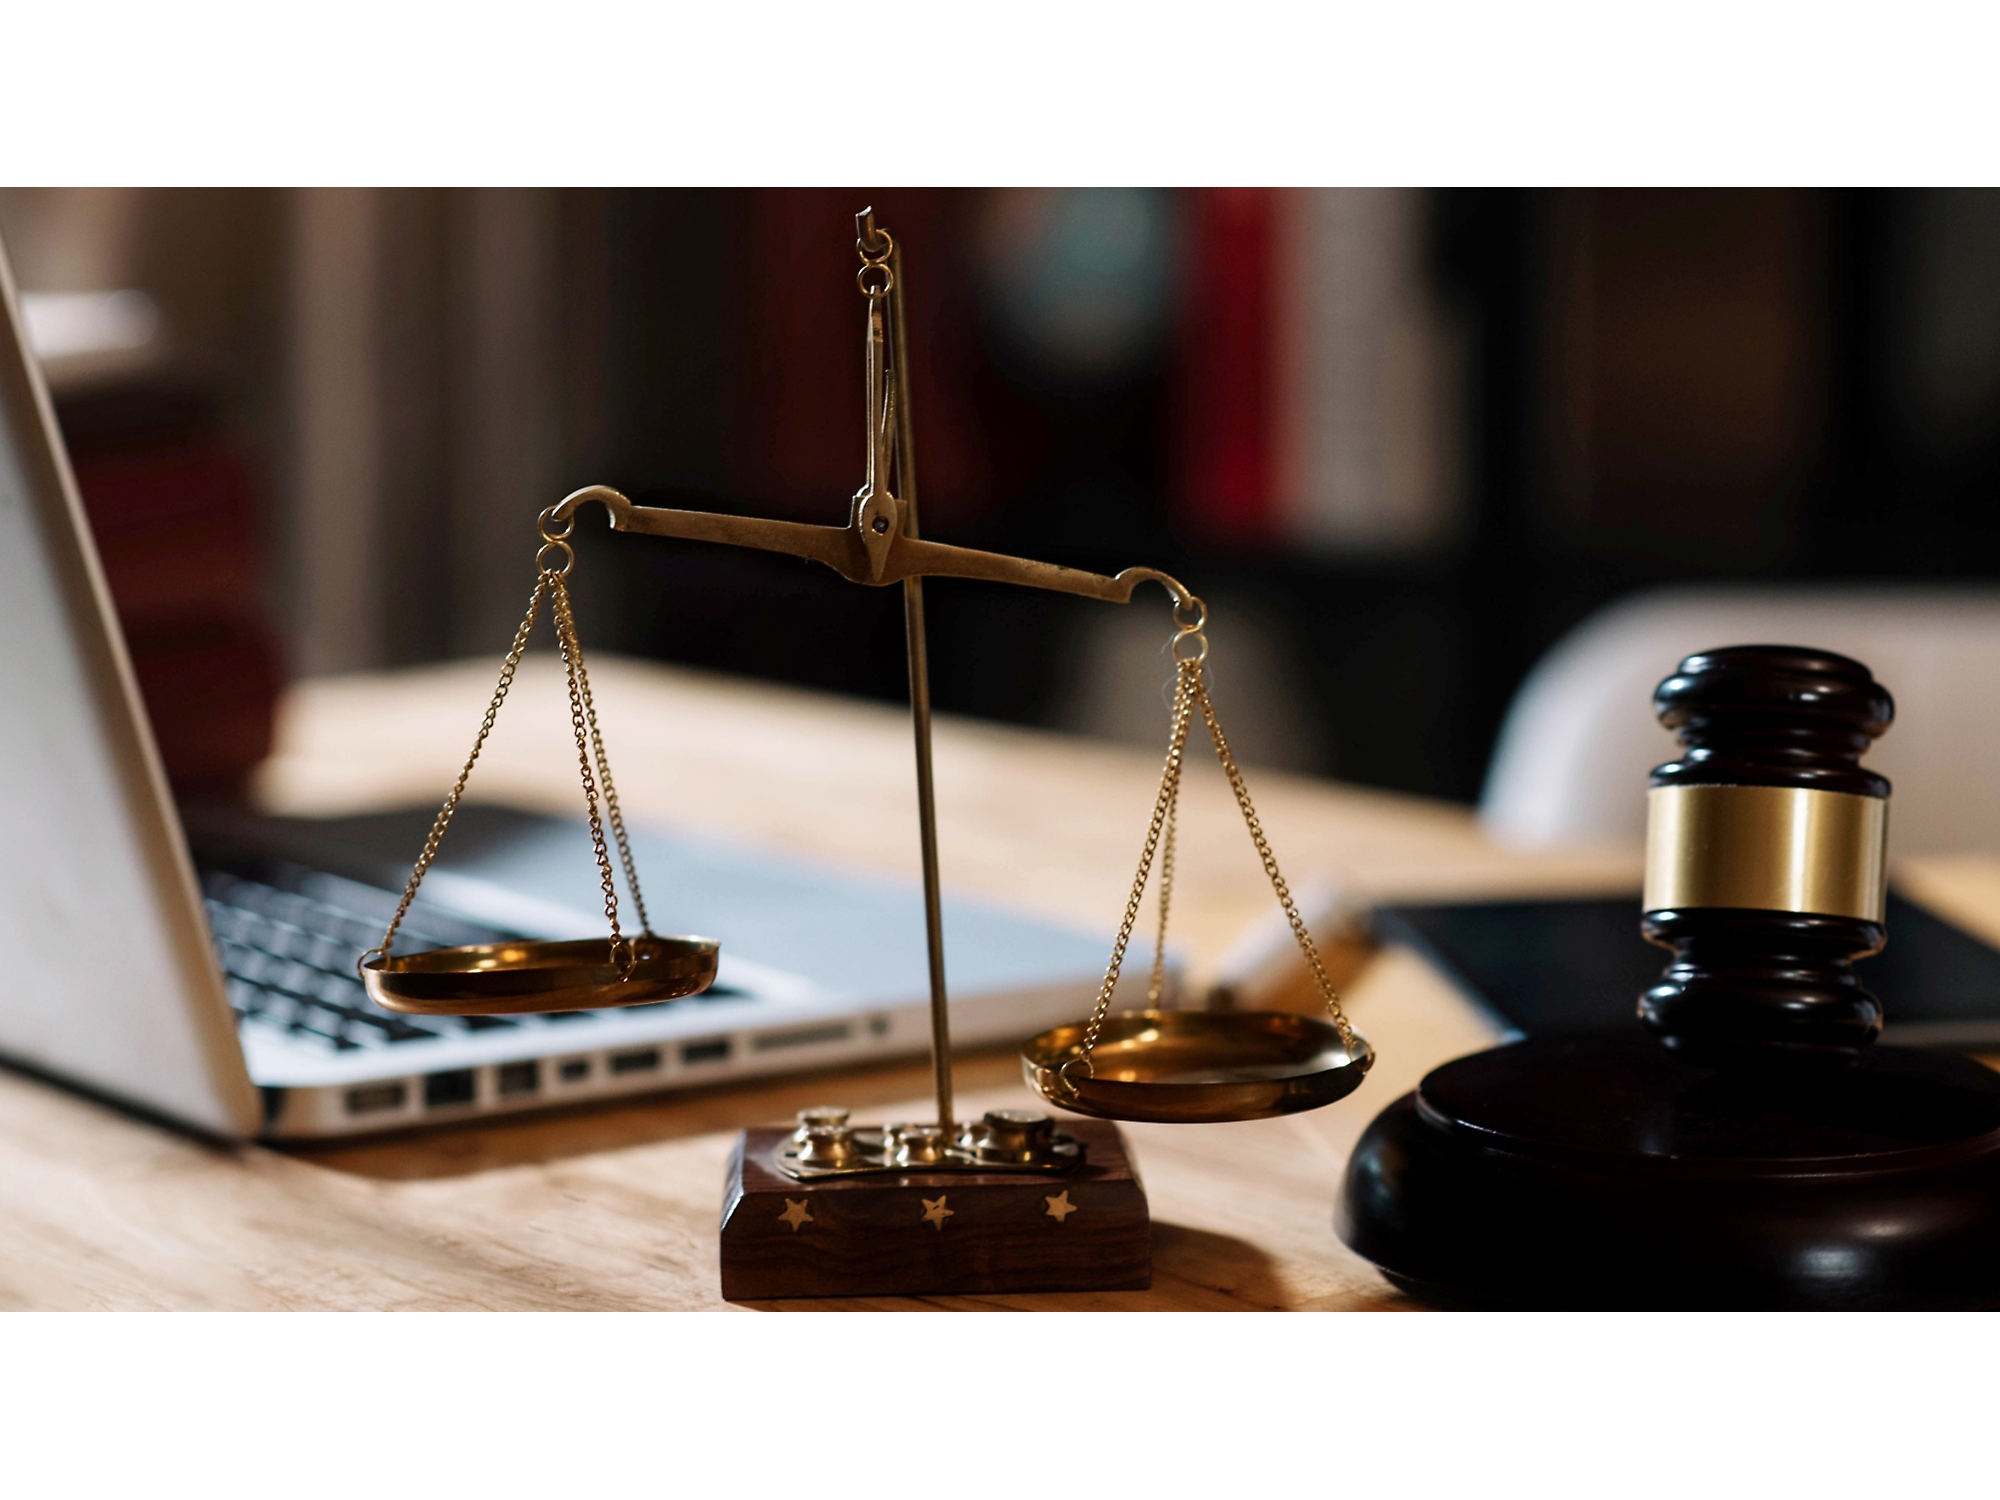 Дървено чукче и комплект везни върху бюро с лаптоп на заден план, символизиращи юридическата практика в офис.